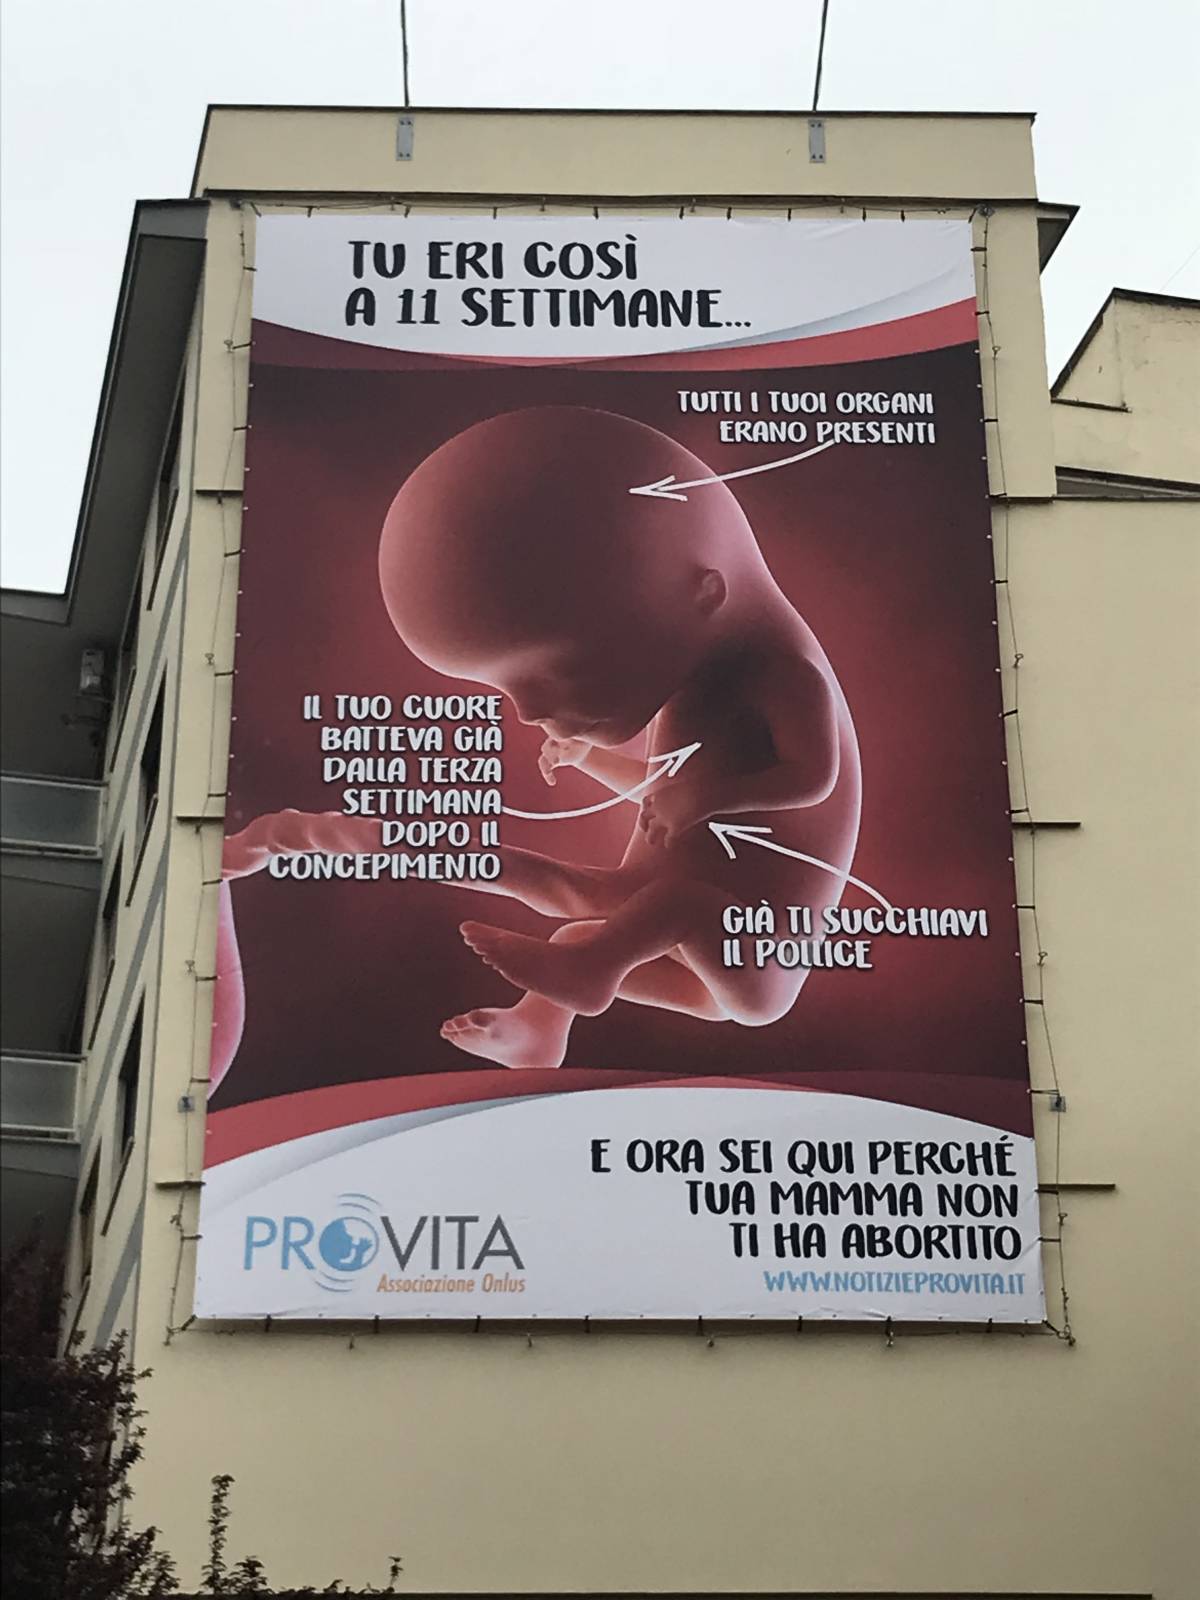 Anche a Genova il manifesto anti-aborto. Polemica Cgil-Forza Nuova